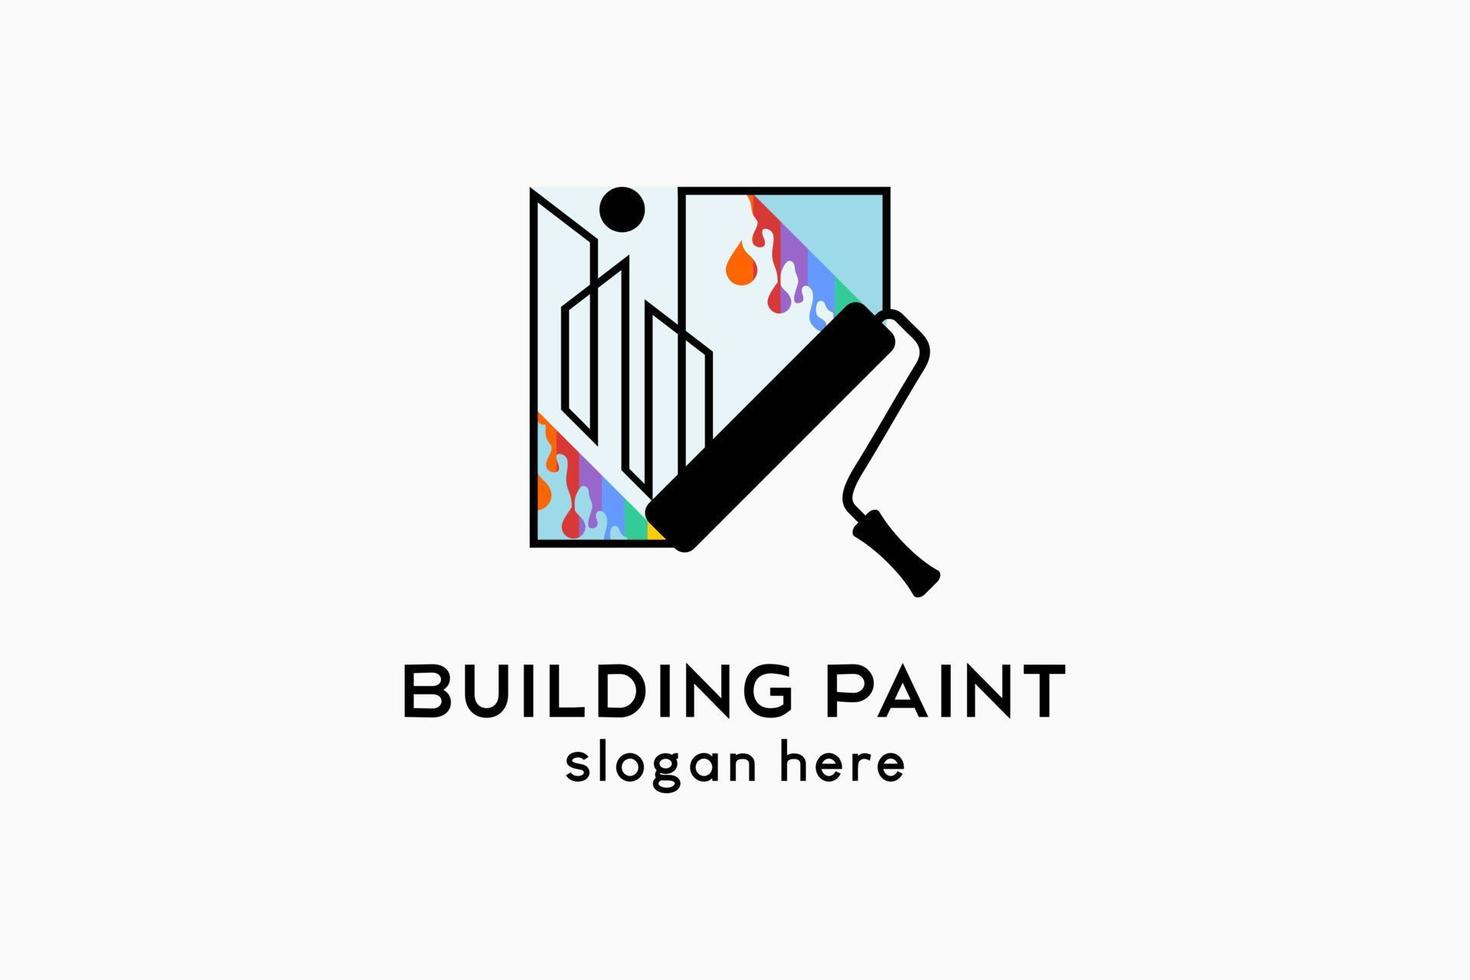 disegno del logo della pittura murale o della pittura per edifici, sagome ed edifici del pennello a rullo combinati con i colori dell'arcobaleno in una scatola vettore